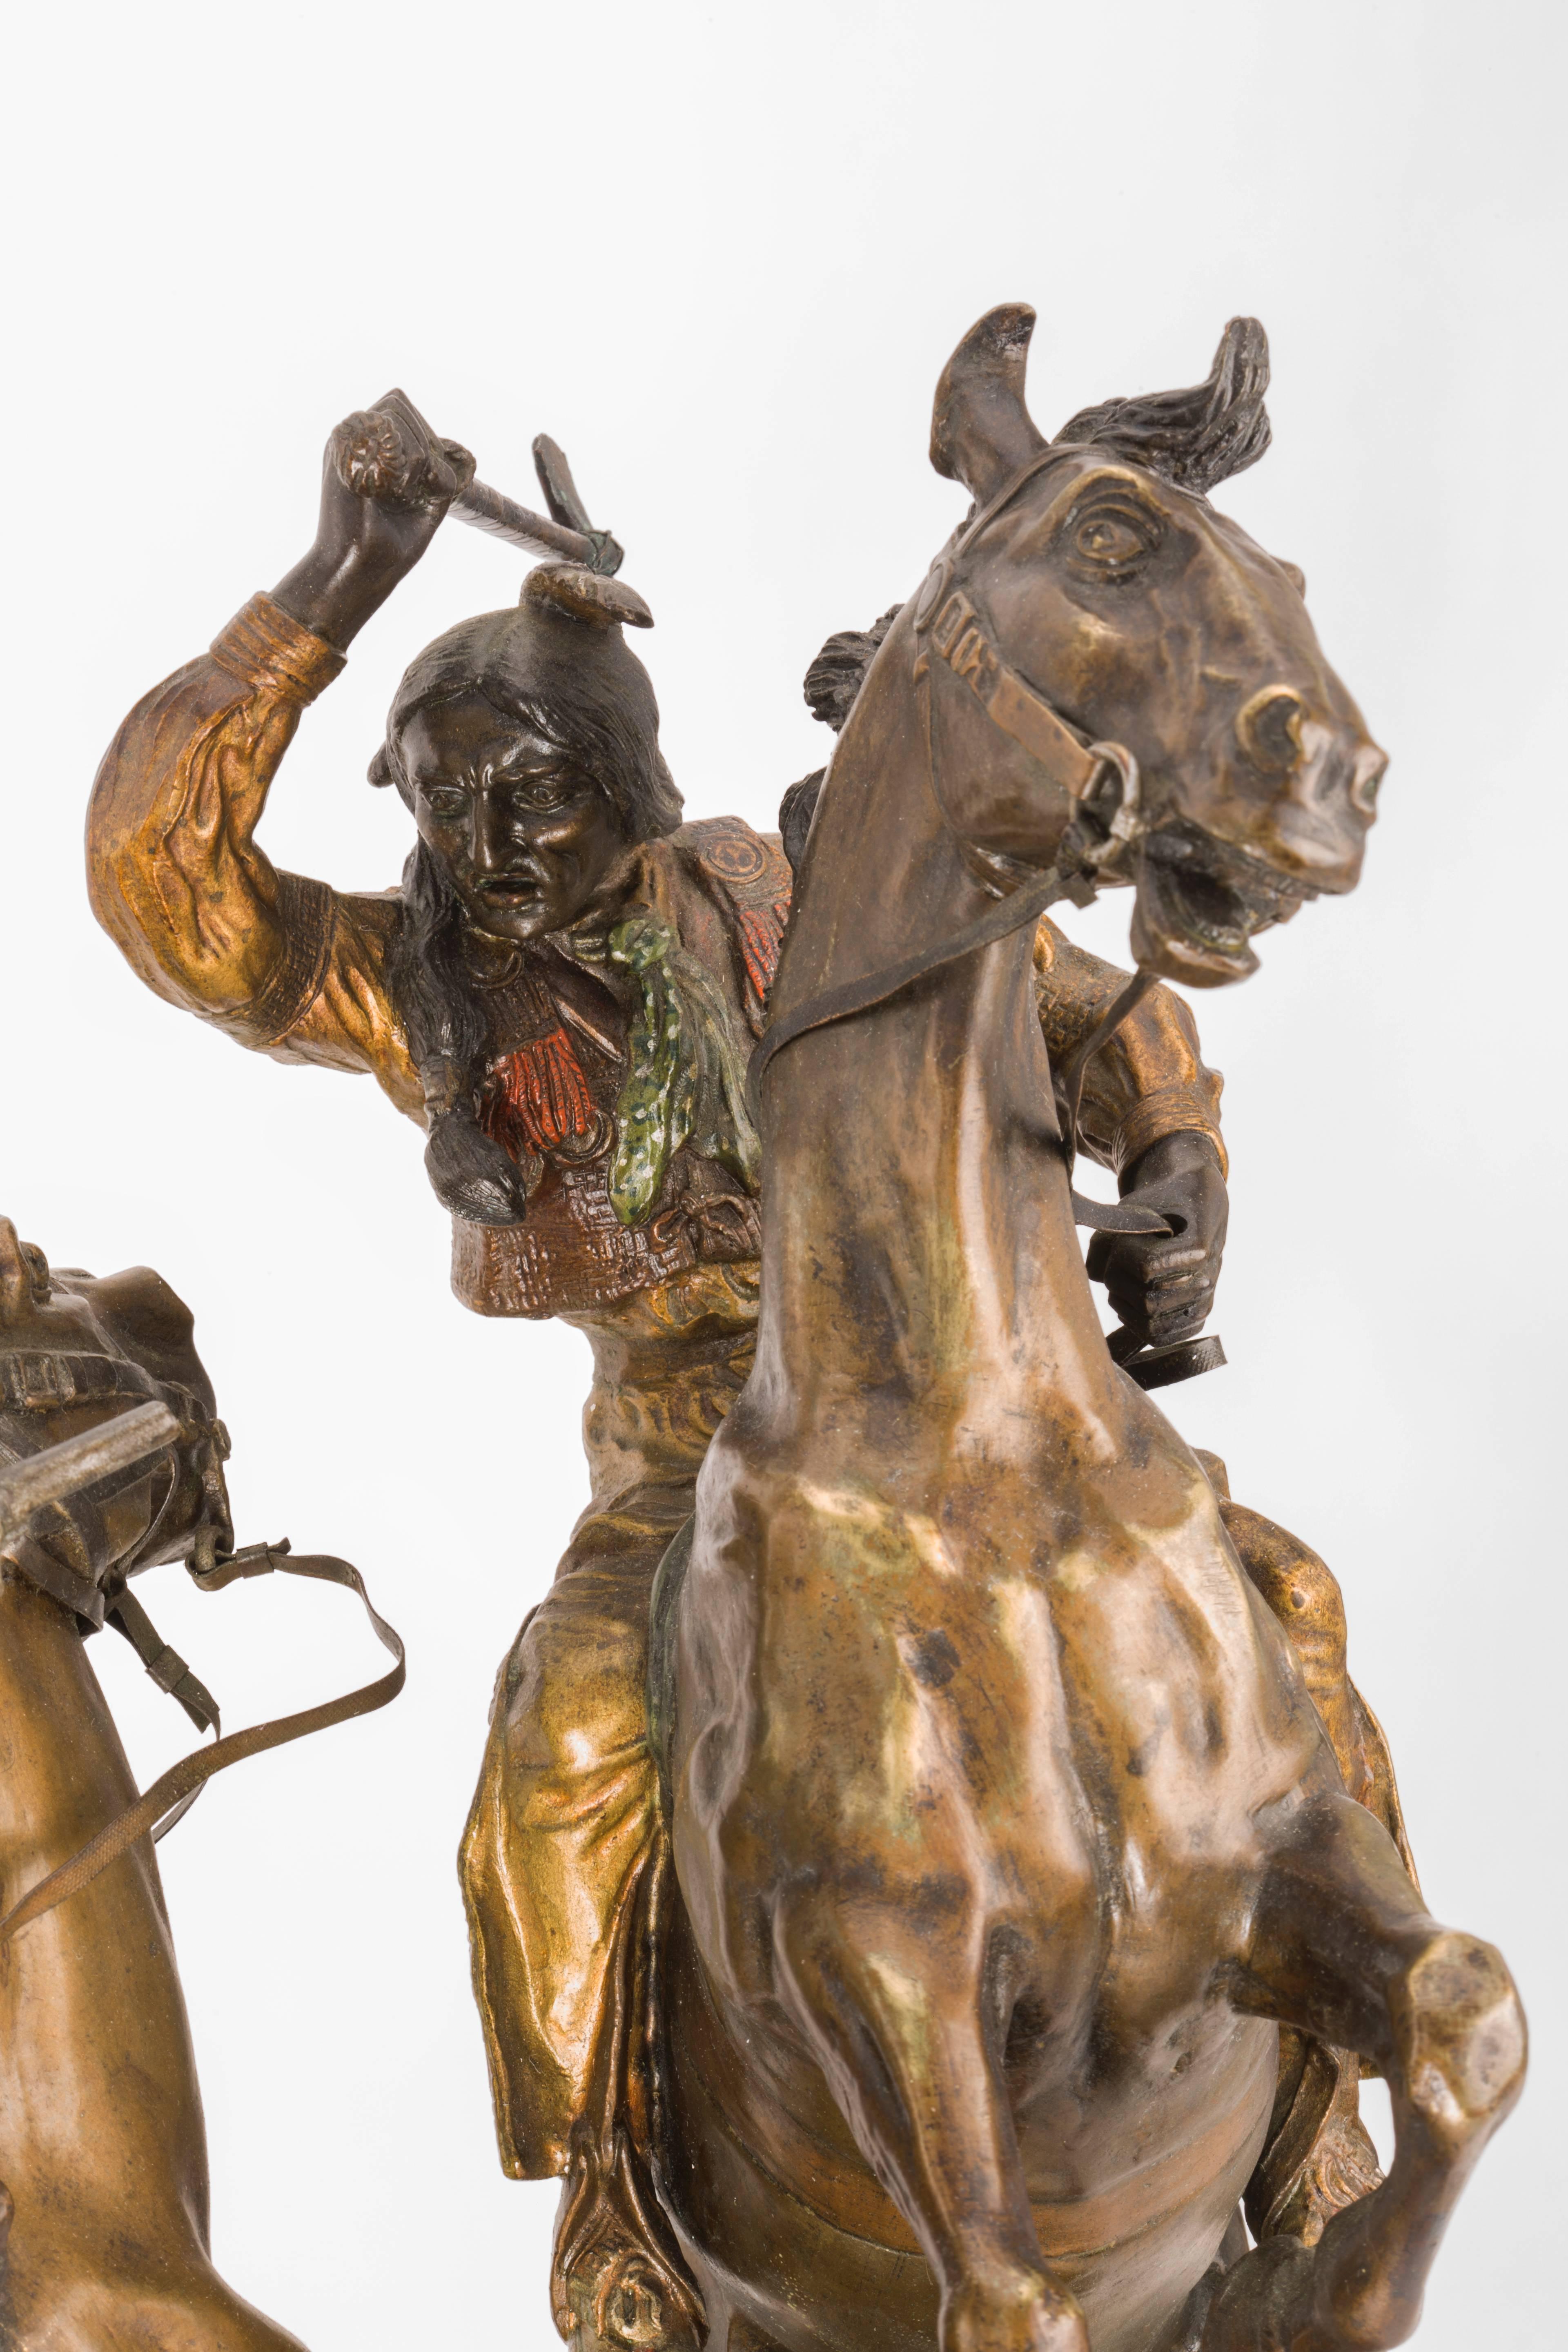 Art Nouveau Cowboy and Indian Sculpture by, Carl Kauba